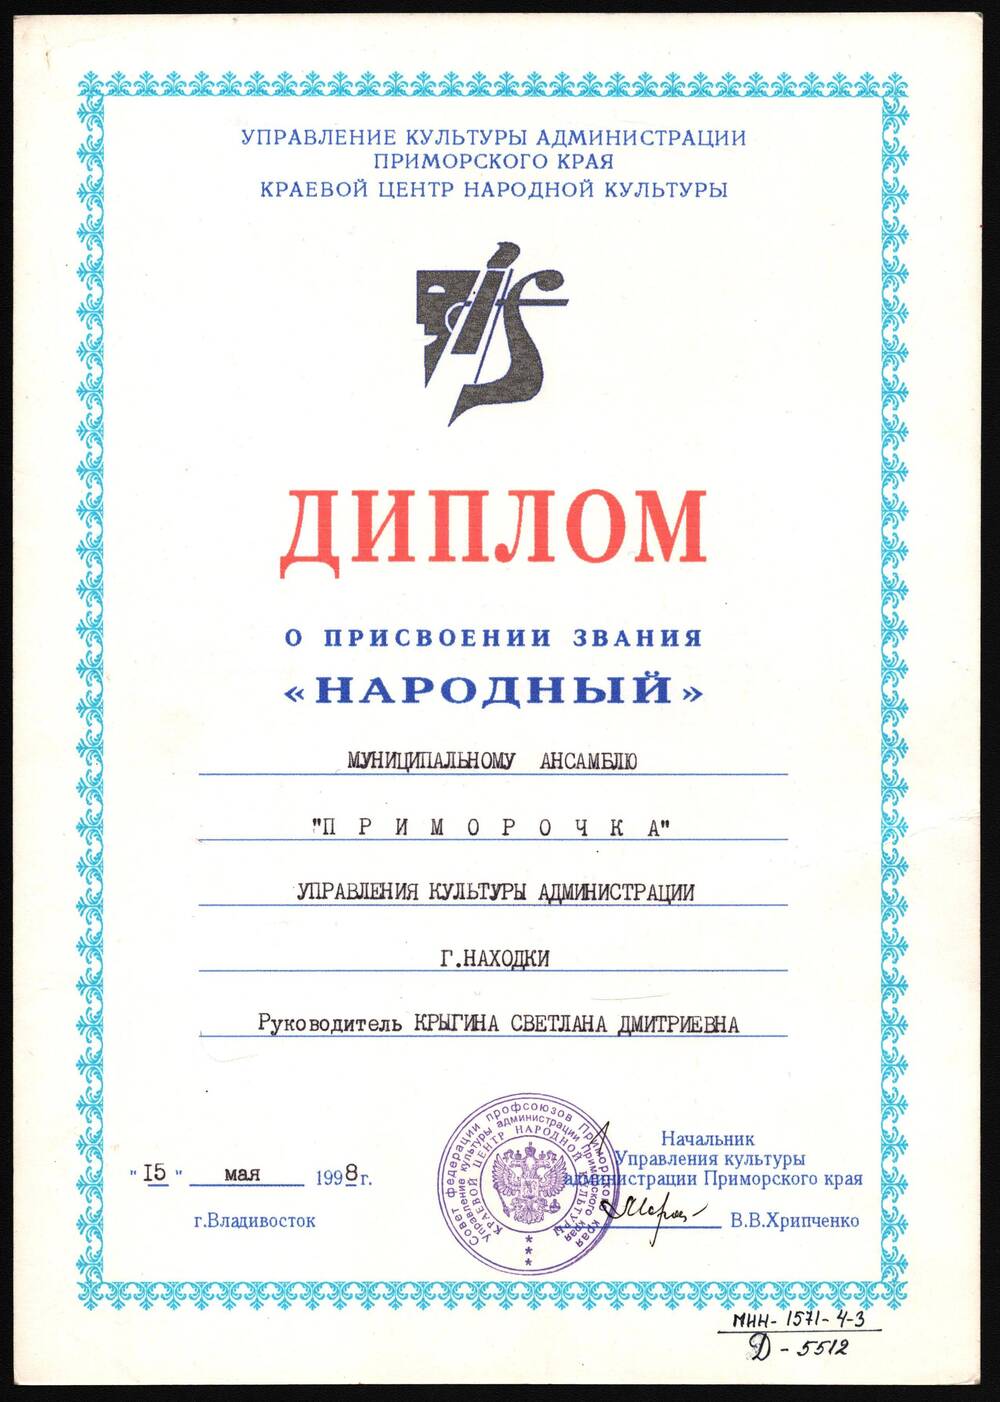 Диплом о присвоении звания Народный мунициального ансамбля Приморочка.